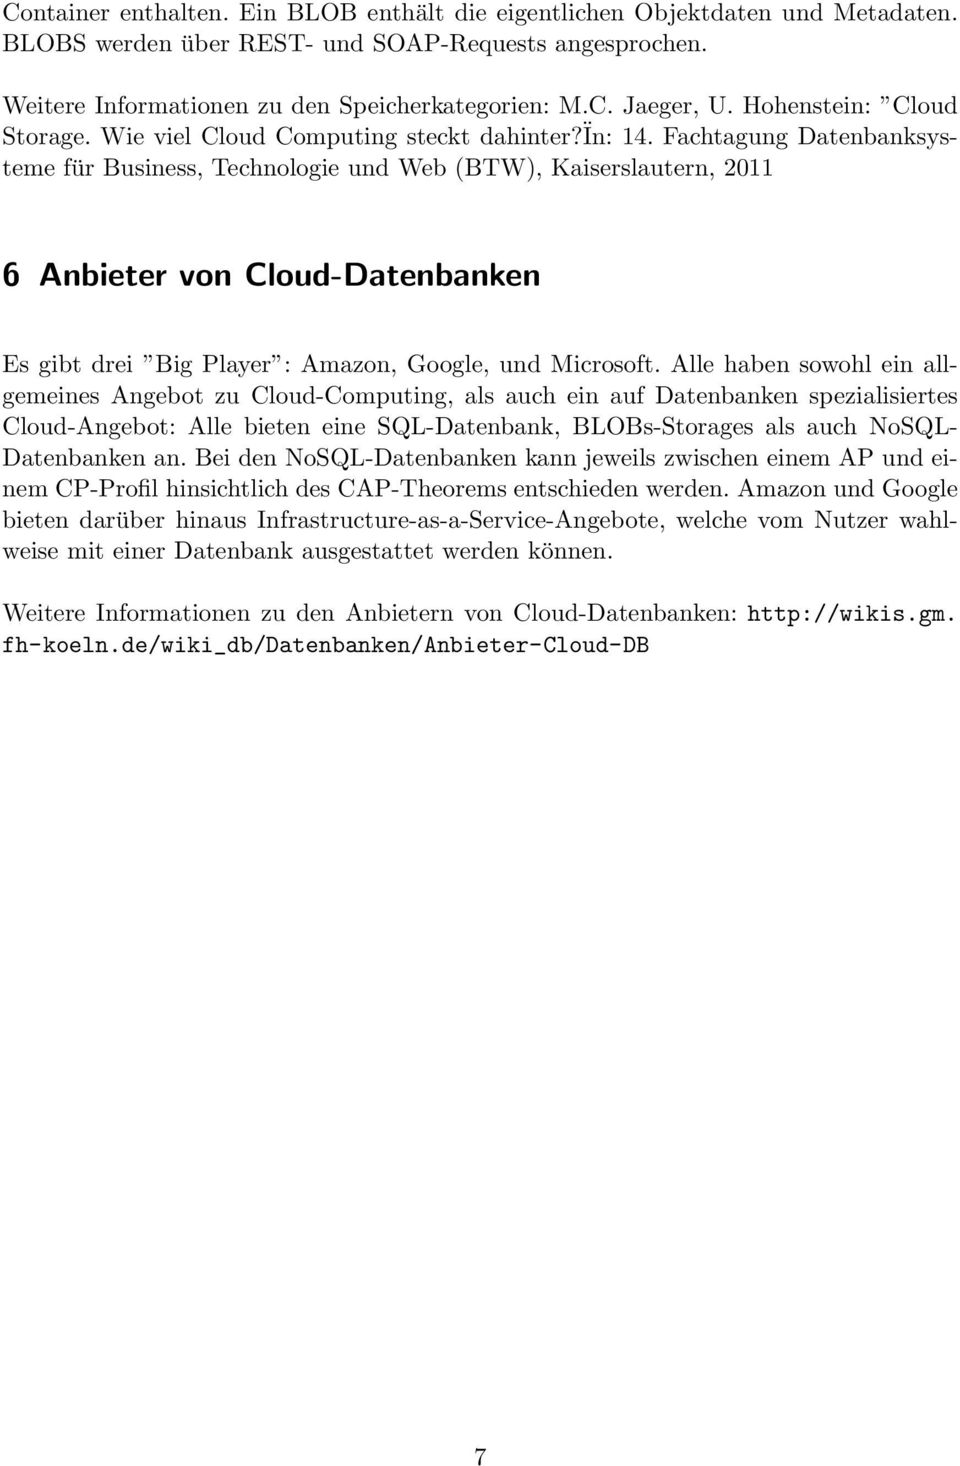 Fachtagung Datenbanksysteme für Business, Technologie und Web (BTW), Kaiserslautern, 2011 6 Anbieter von Cloud-Datenbanken Es gibt drei Big Player : Amazon, Google, und Microsoft.